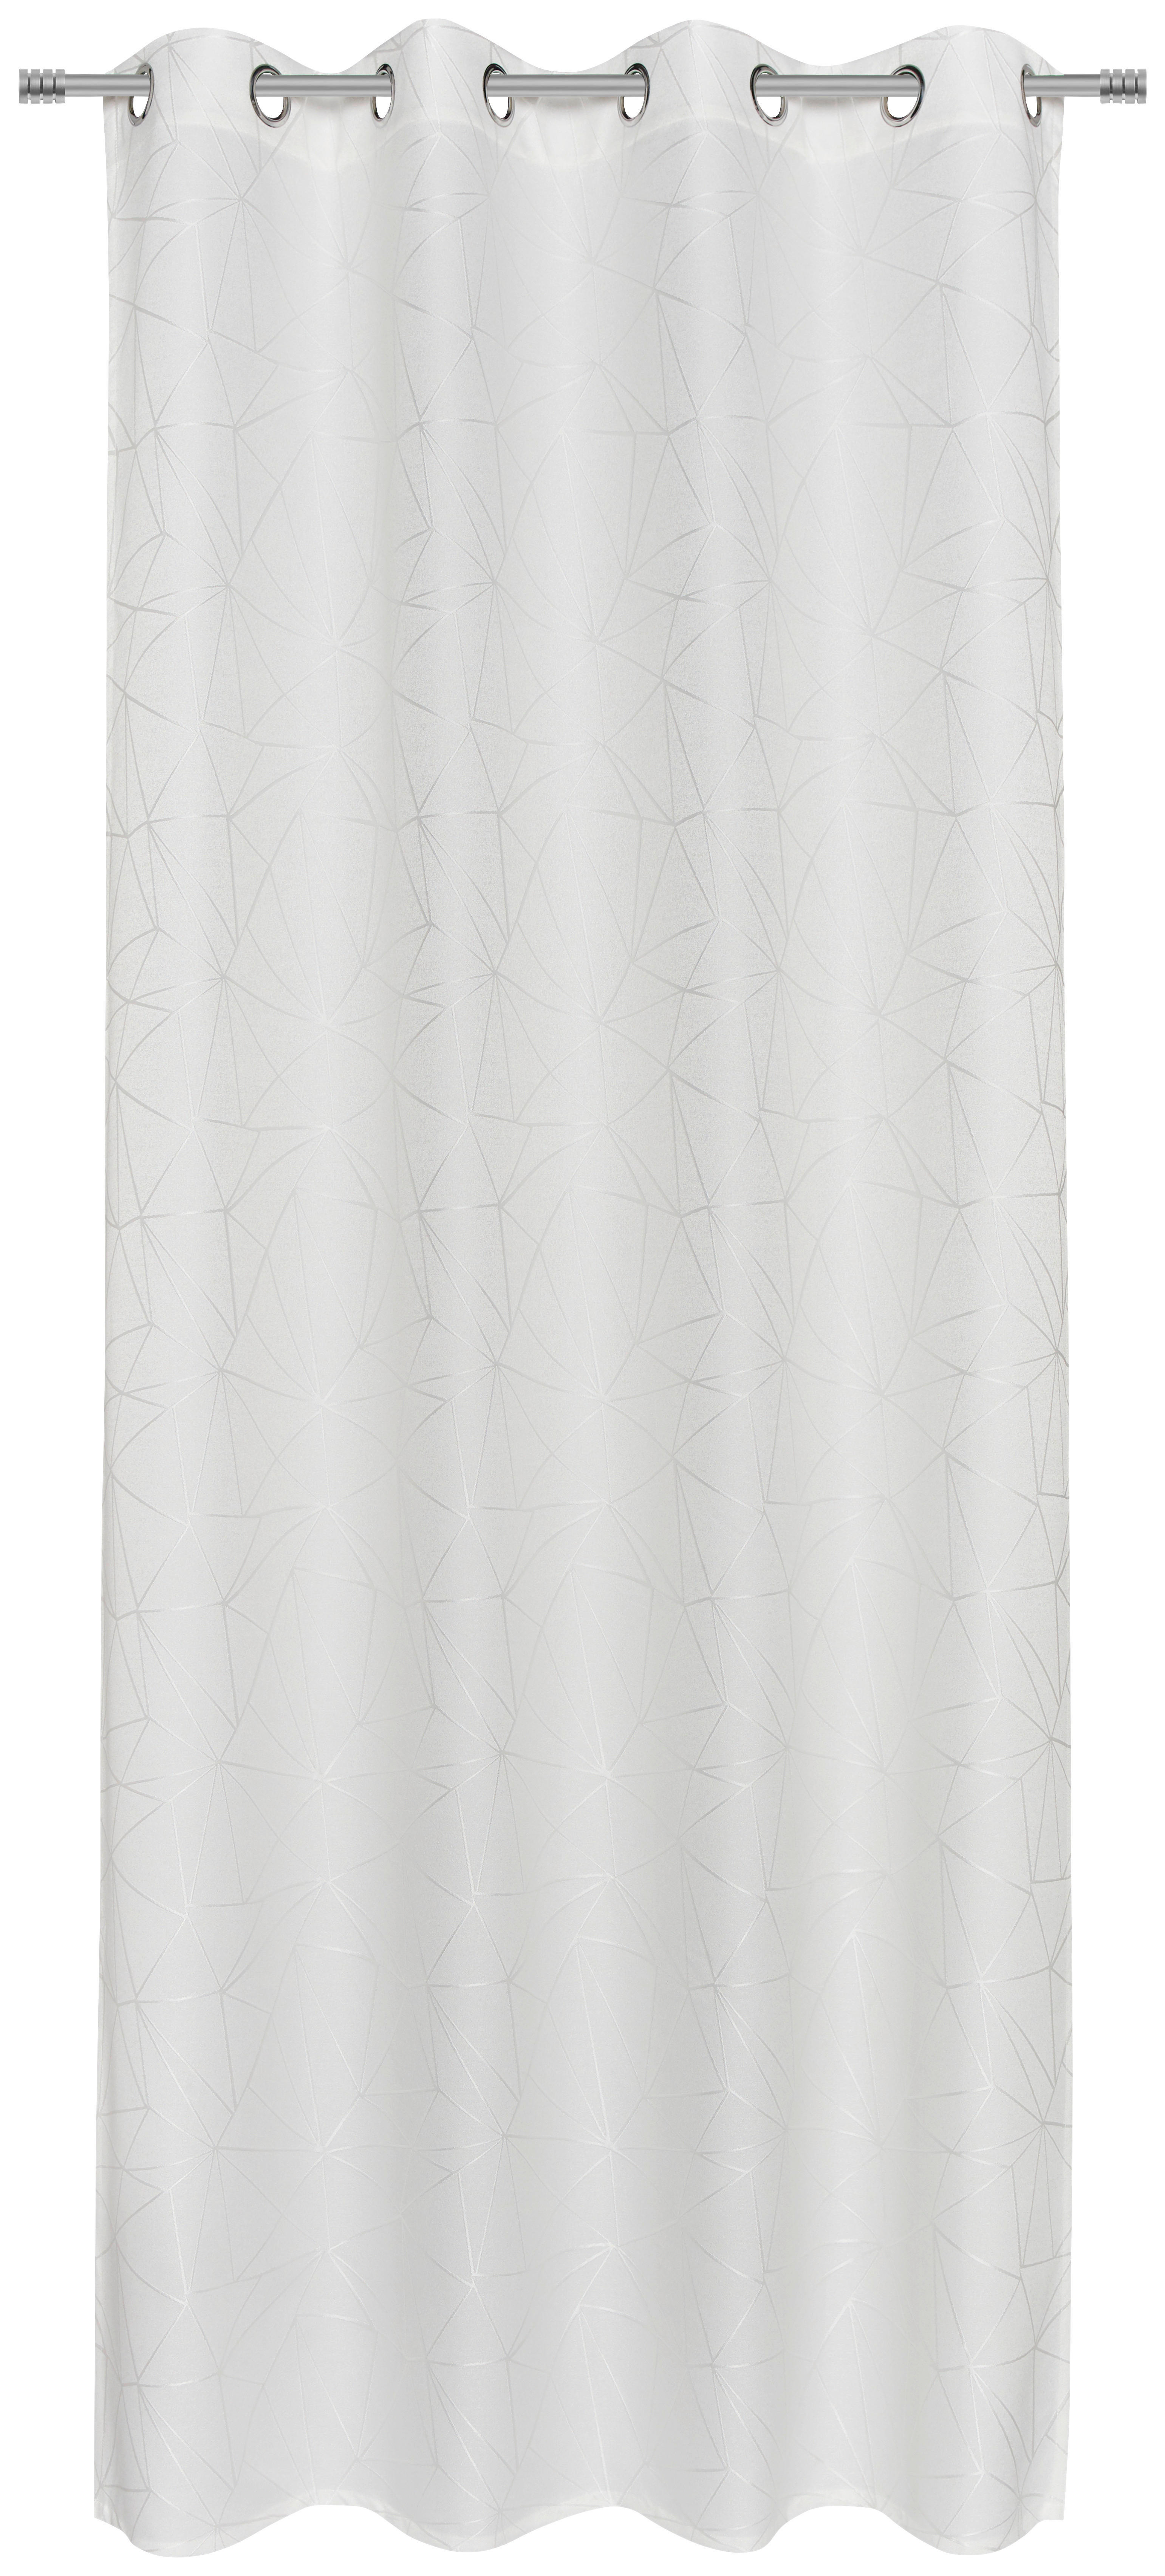 ÖSENVORHANG blickdicht  - weiss, Design, Textil (135/245cm) - Esposa